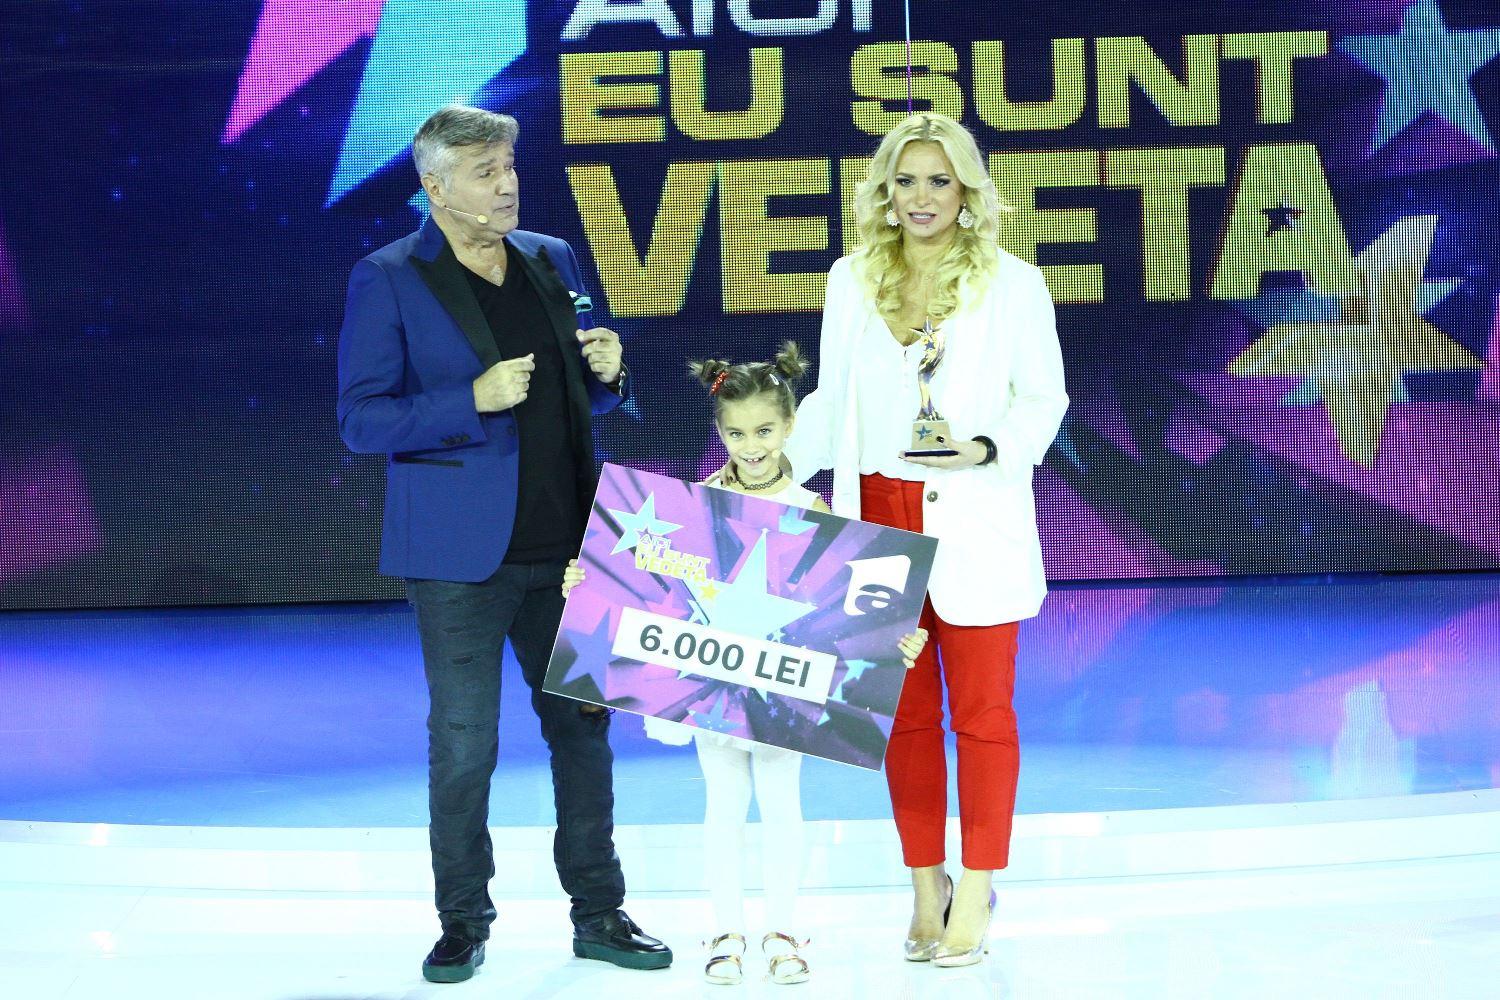 Paula Chirilă și fiica ei, Carla, au câștigat cea de-a treia ediție “Aici eu sunt vedeta”